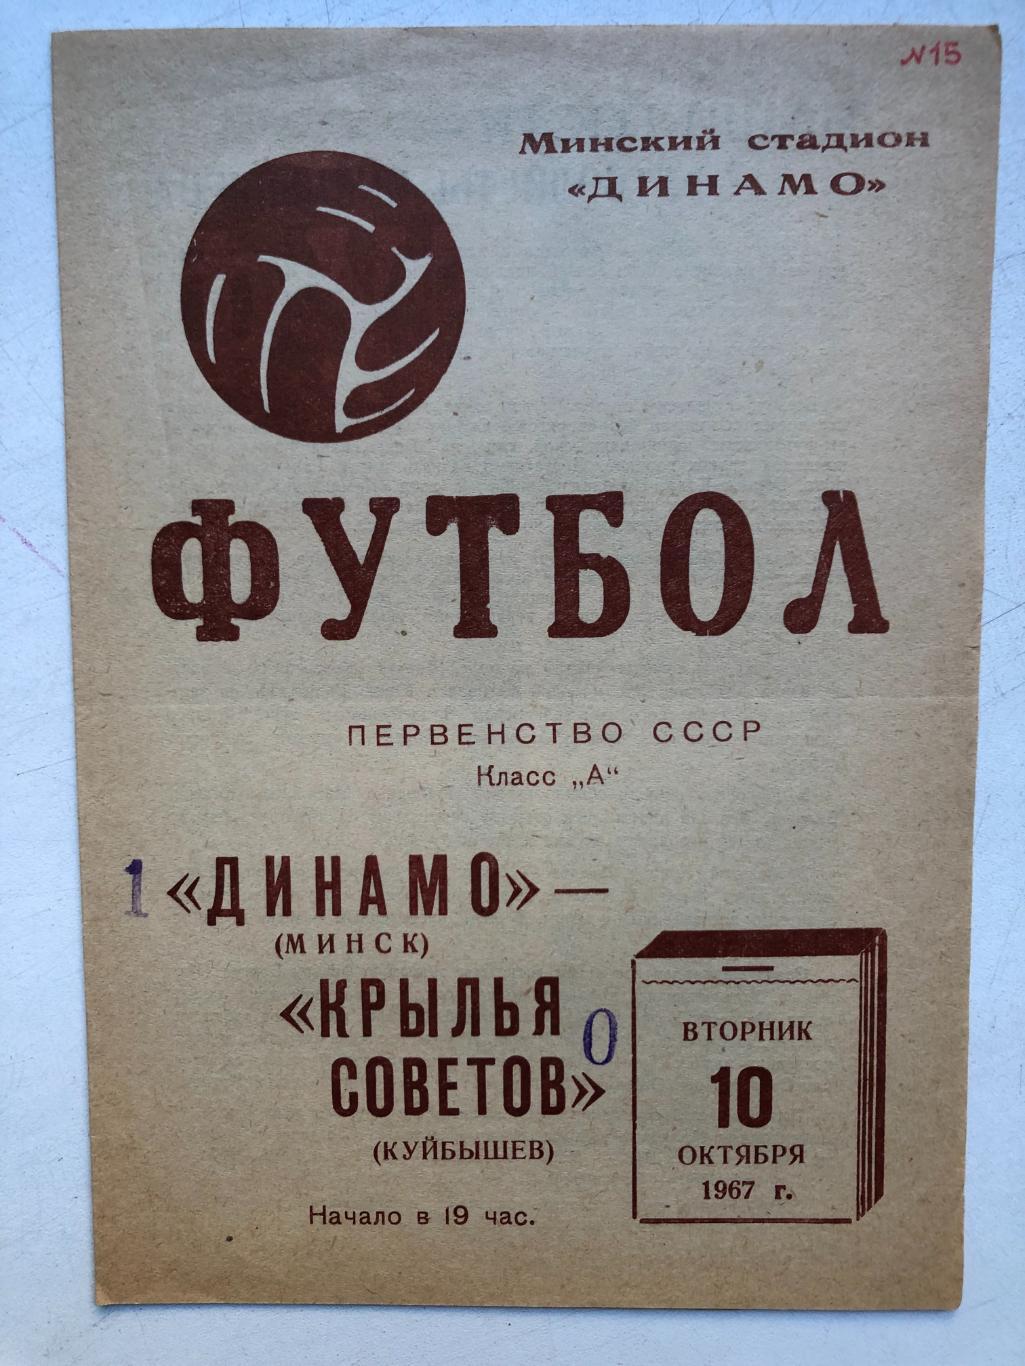 Динамо Минск - Крылья Советов 10.11.1967